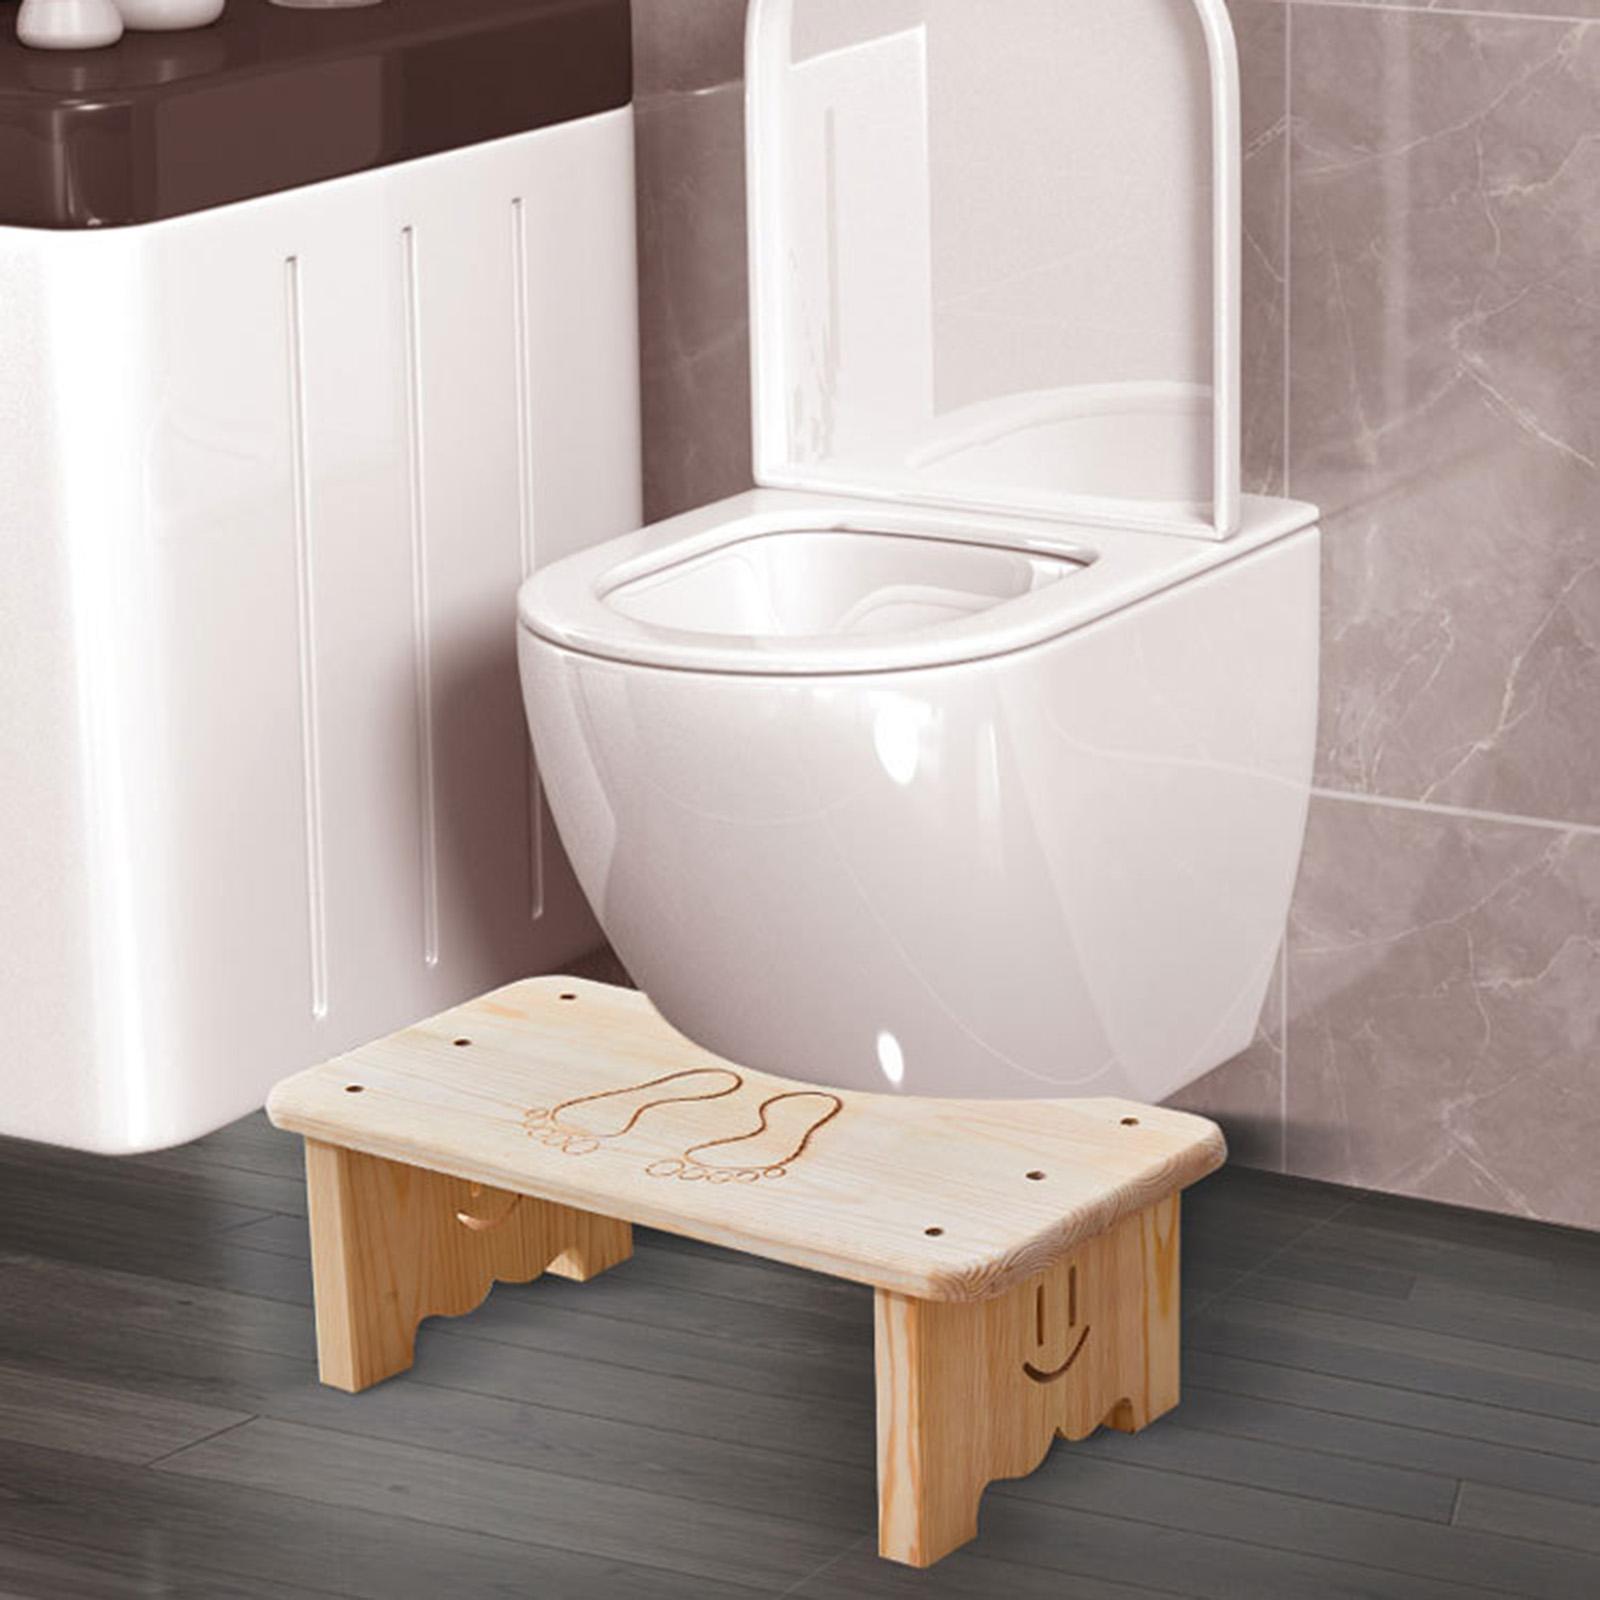 Toilet Stool Non Slip Bathroom Stool for Adults Indoor Outdoor Children